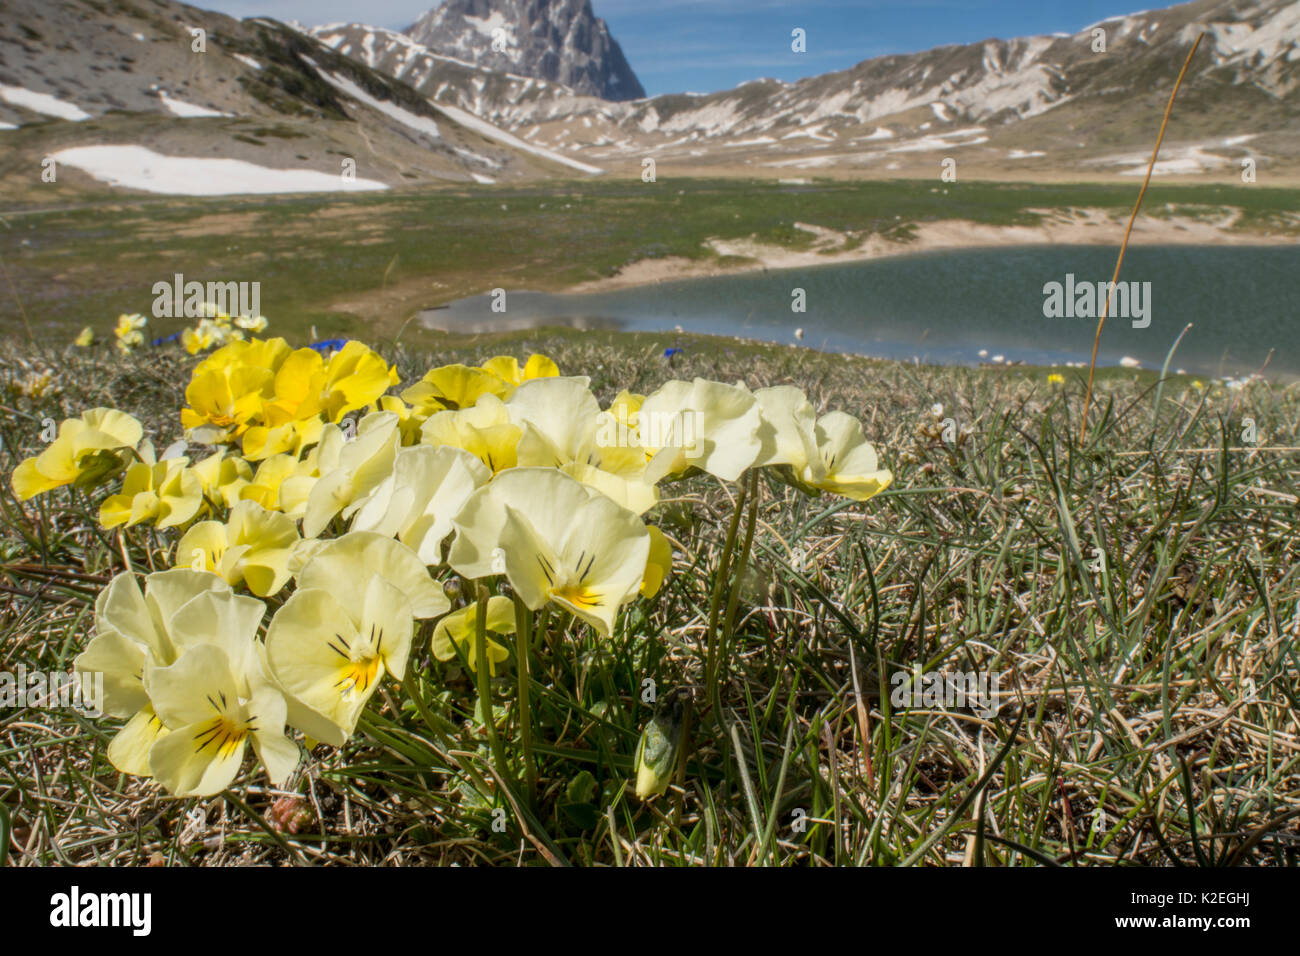 L'Eugenia pansy (Viola eugeniae) une endémique des Apennins photographié sur le Campo Imperatore, Italie. Avril. Banque D'Images